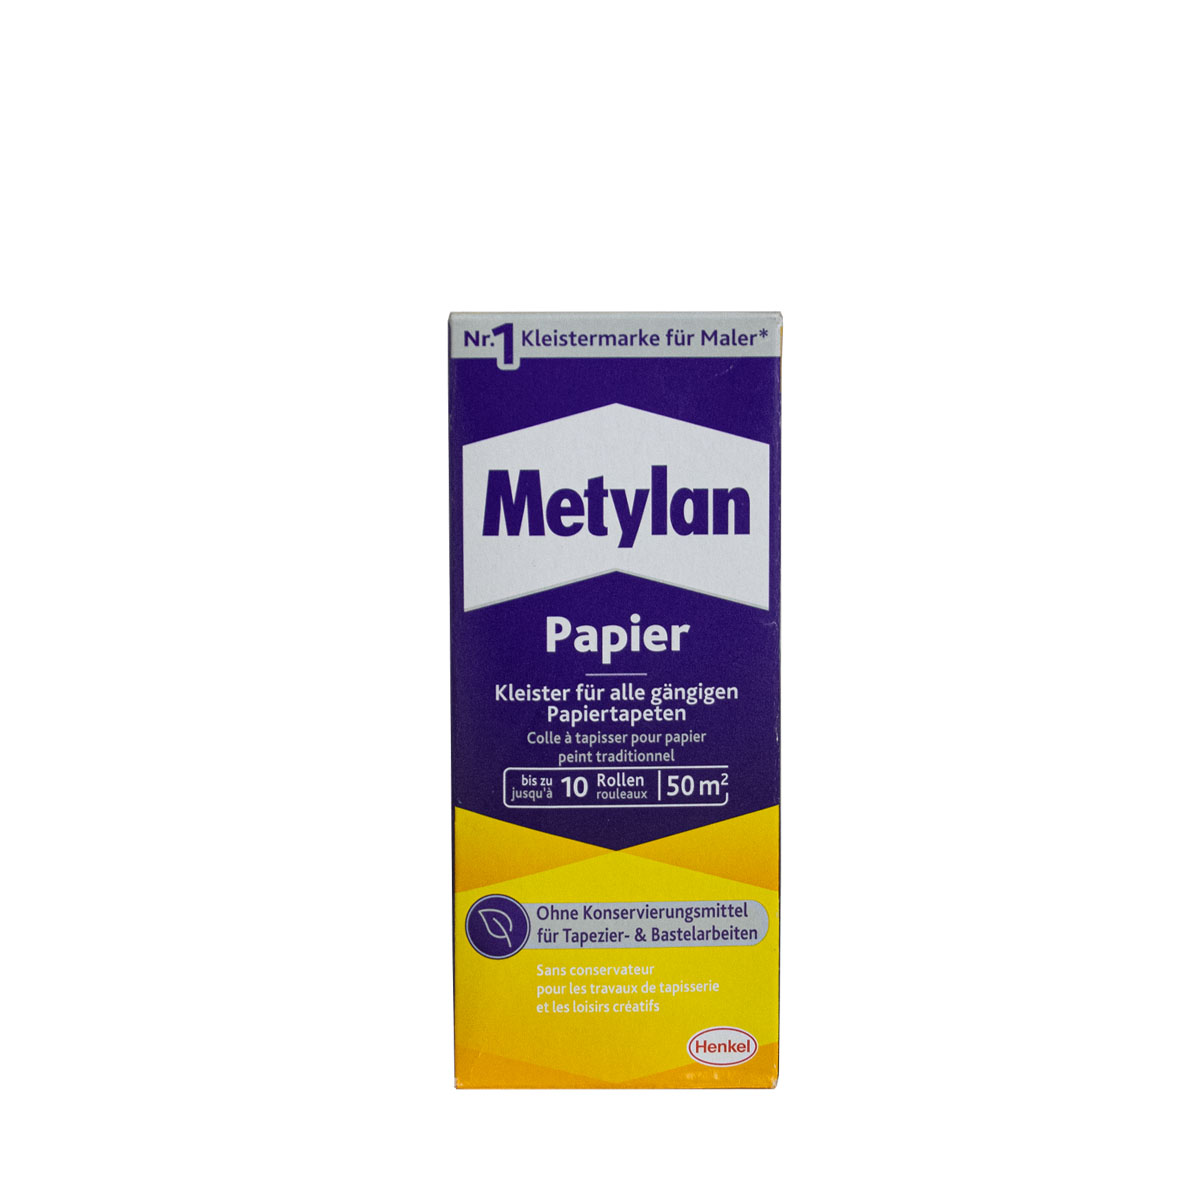 Metylan Papier 125gr MPP40, Kleister für Papiertapeten